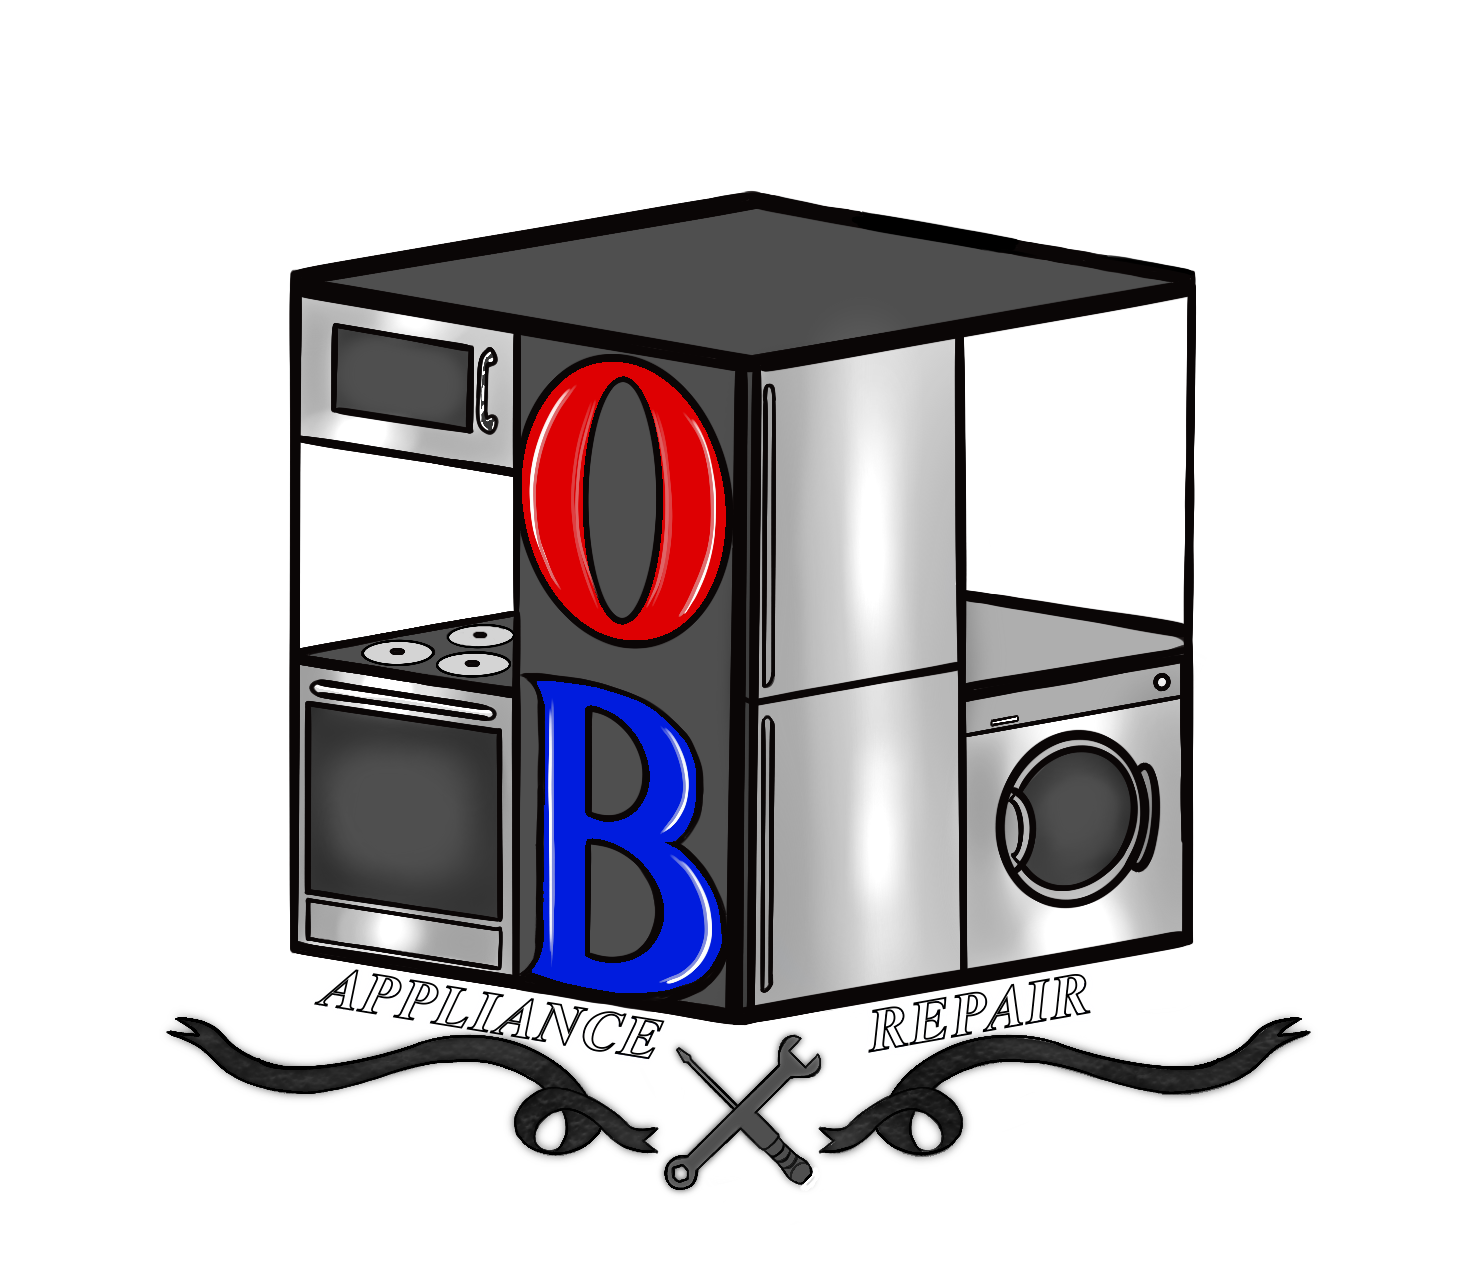 OB Appliance Repair Logo